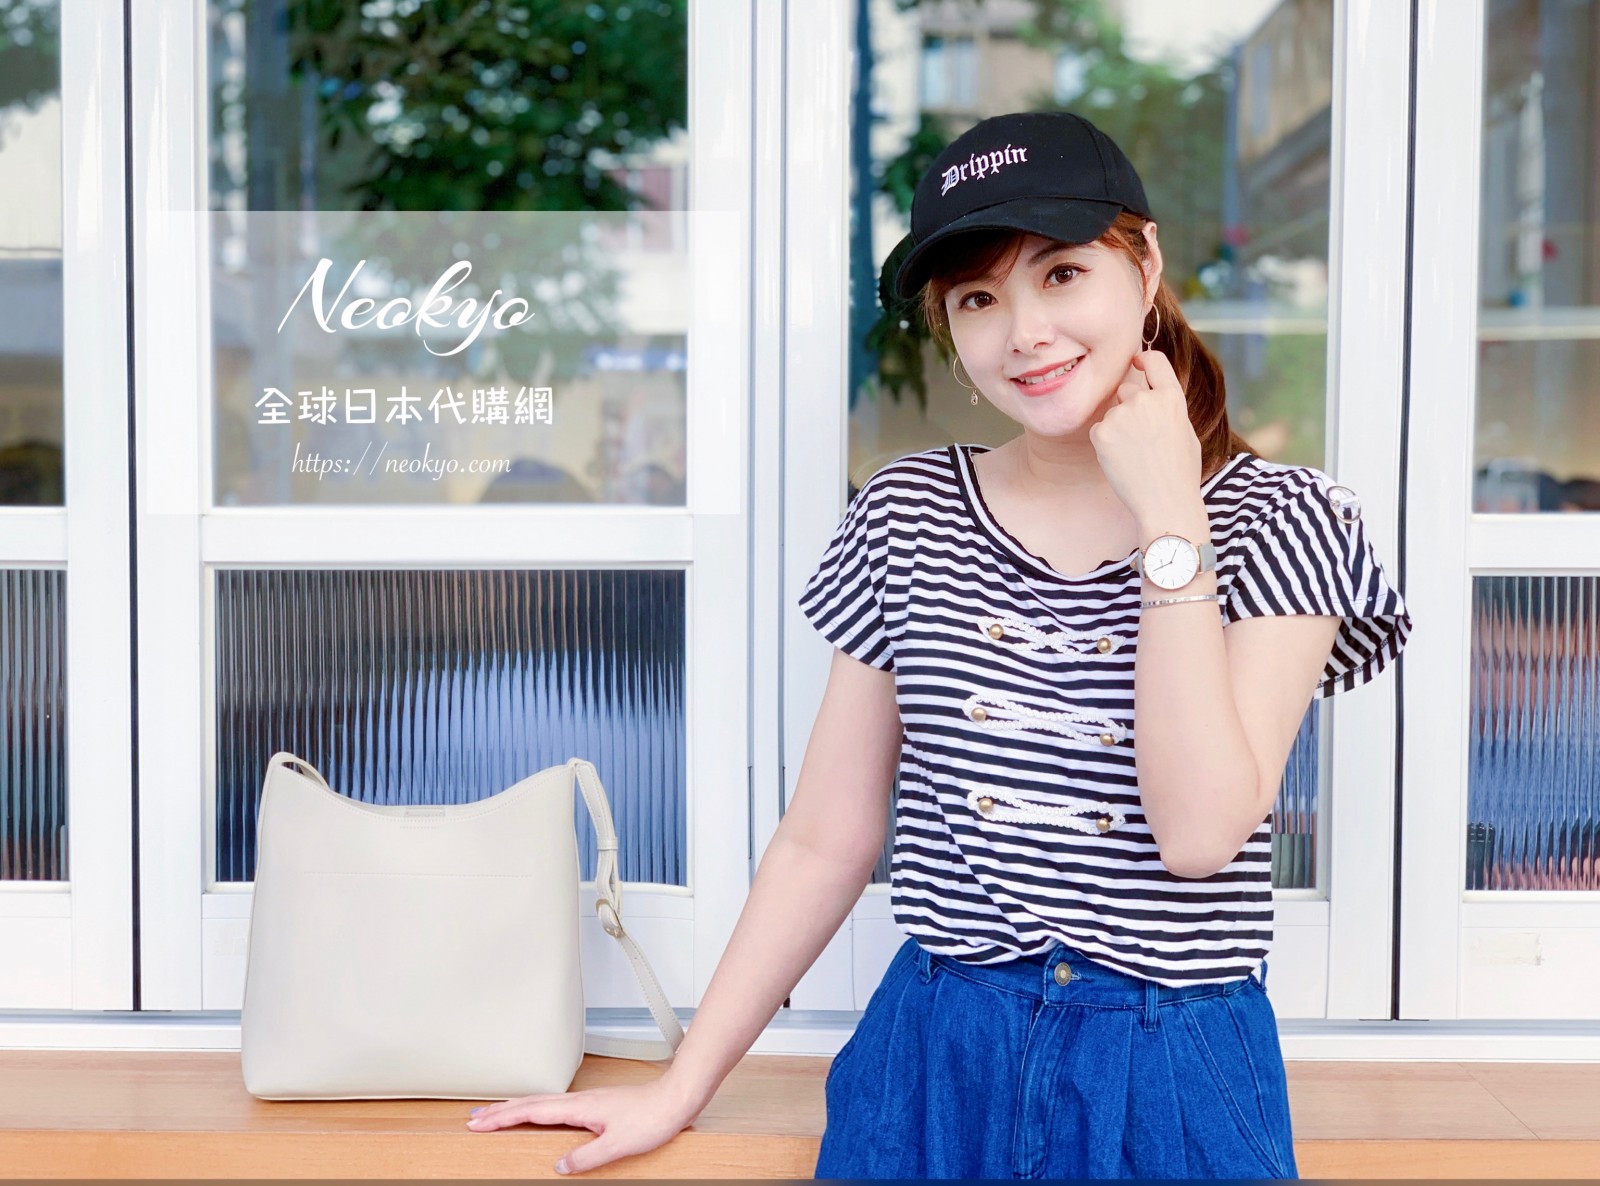 ☆【購物】Neokyo全球日本代購網使用說明、運費估算工具 @凱的日本食尚日記